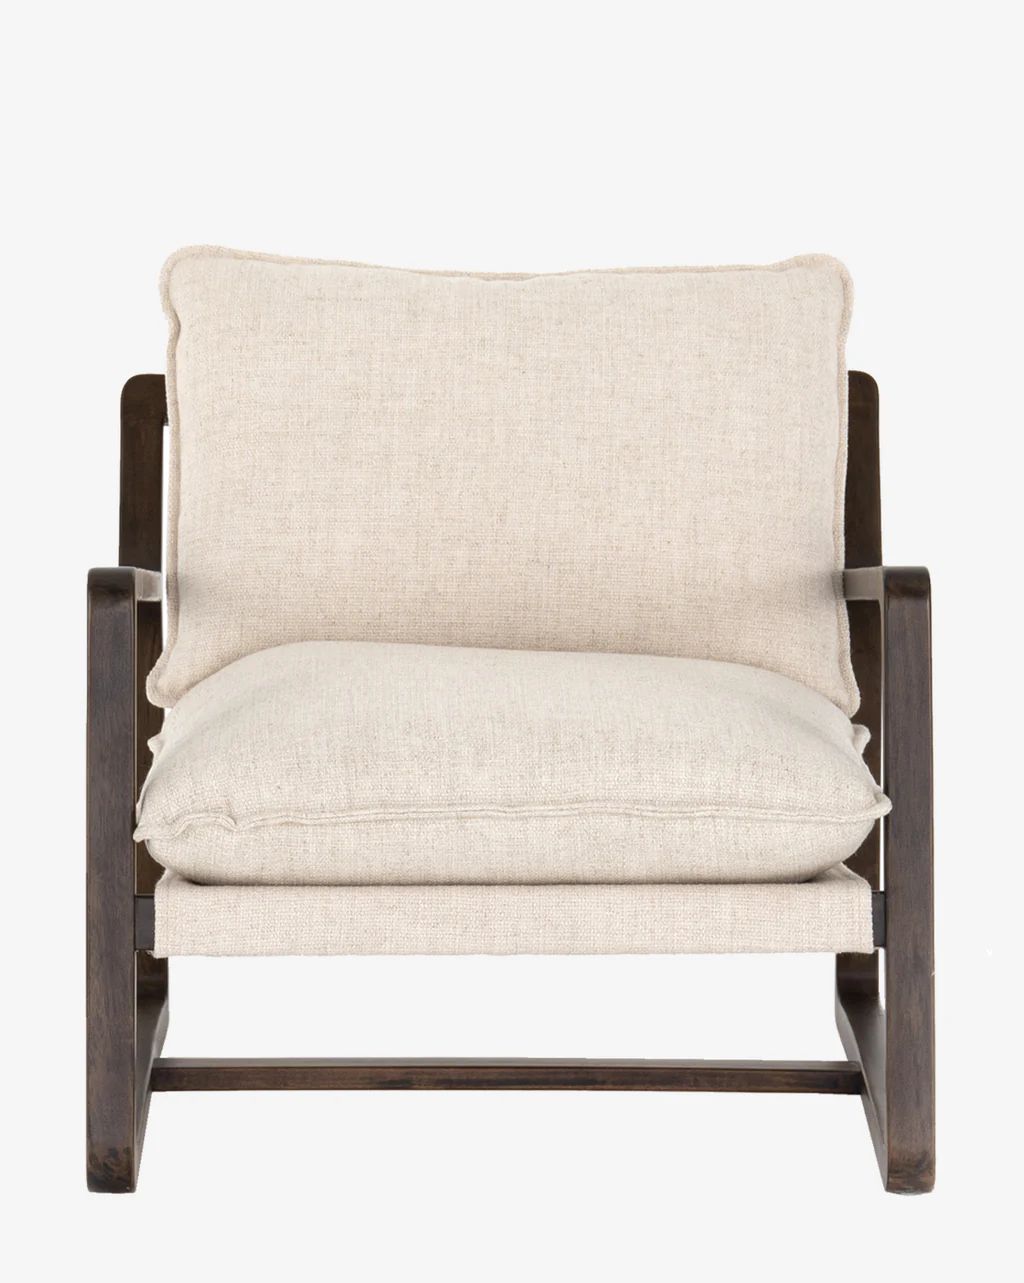 Ura Lounge Chair | McGee & Co. (US)